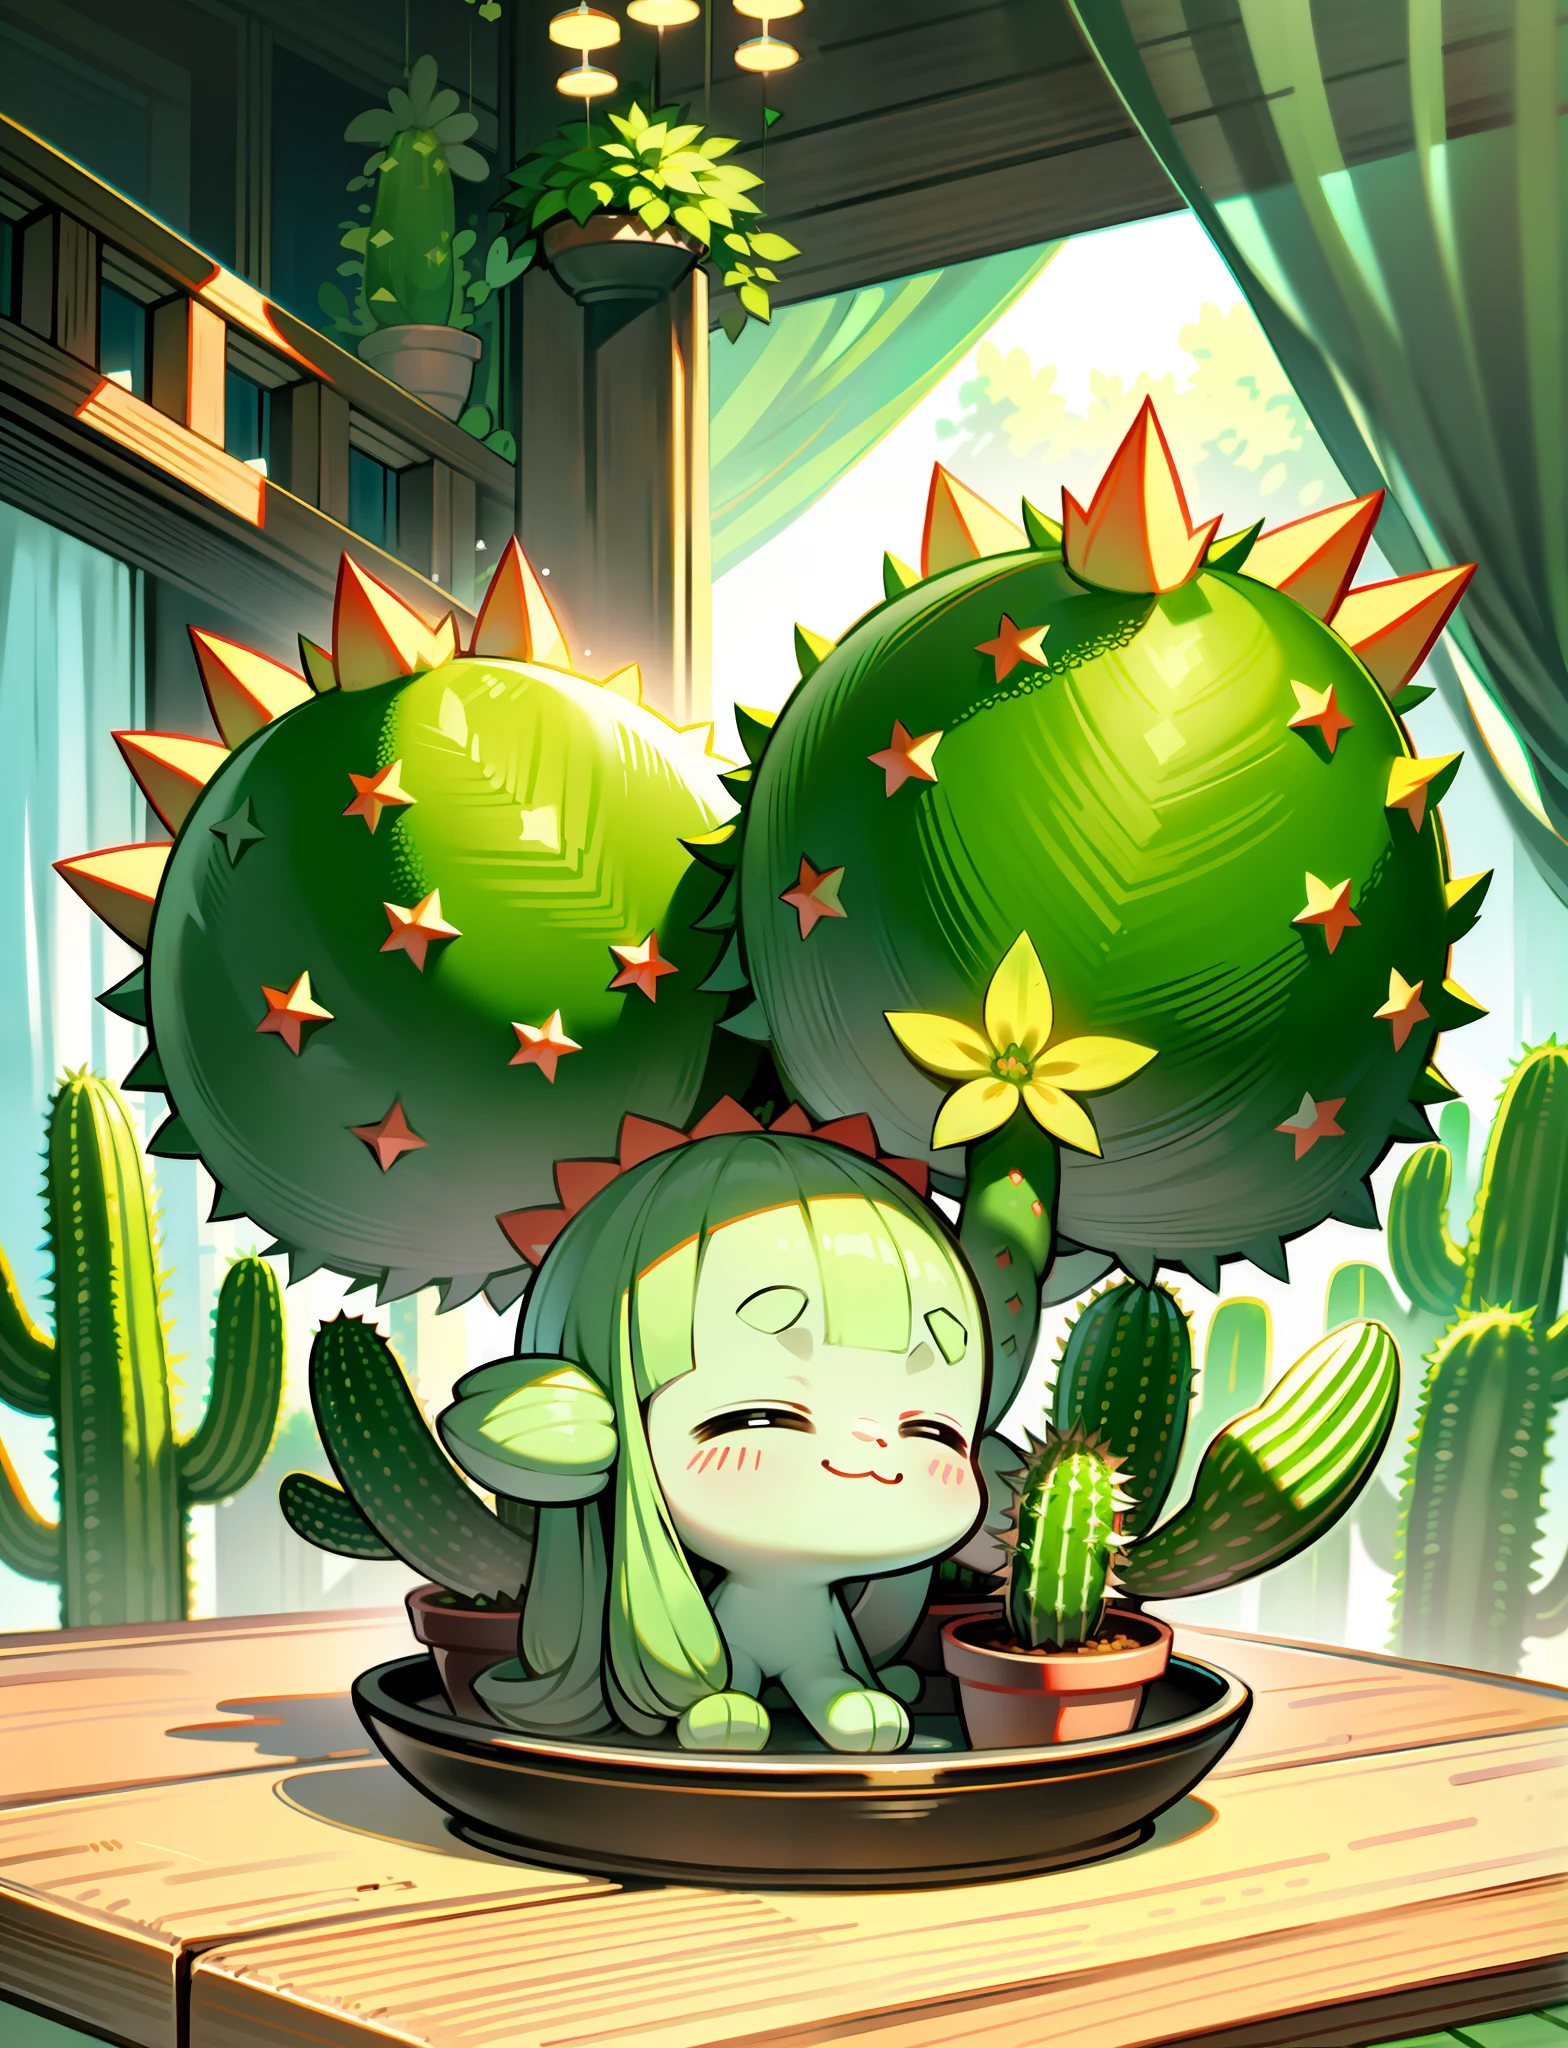 ein Cartoon-Kaktus, anthropomorpher Kaktus, süß cartoonhaft, schöne Illustration, detaillierte digitale Kunst, süße Kunst, süßer Pokemon-Stil, Liebenswert, einen Kaktus halten